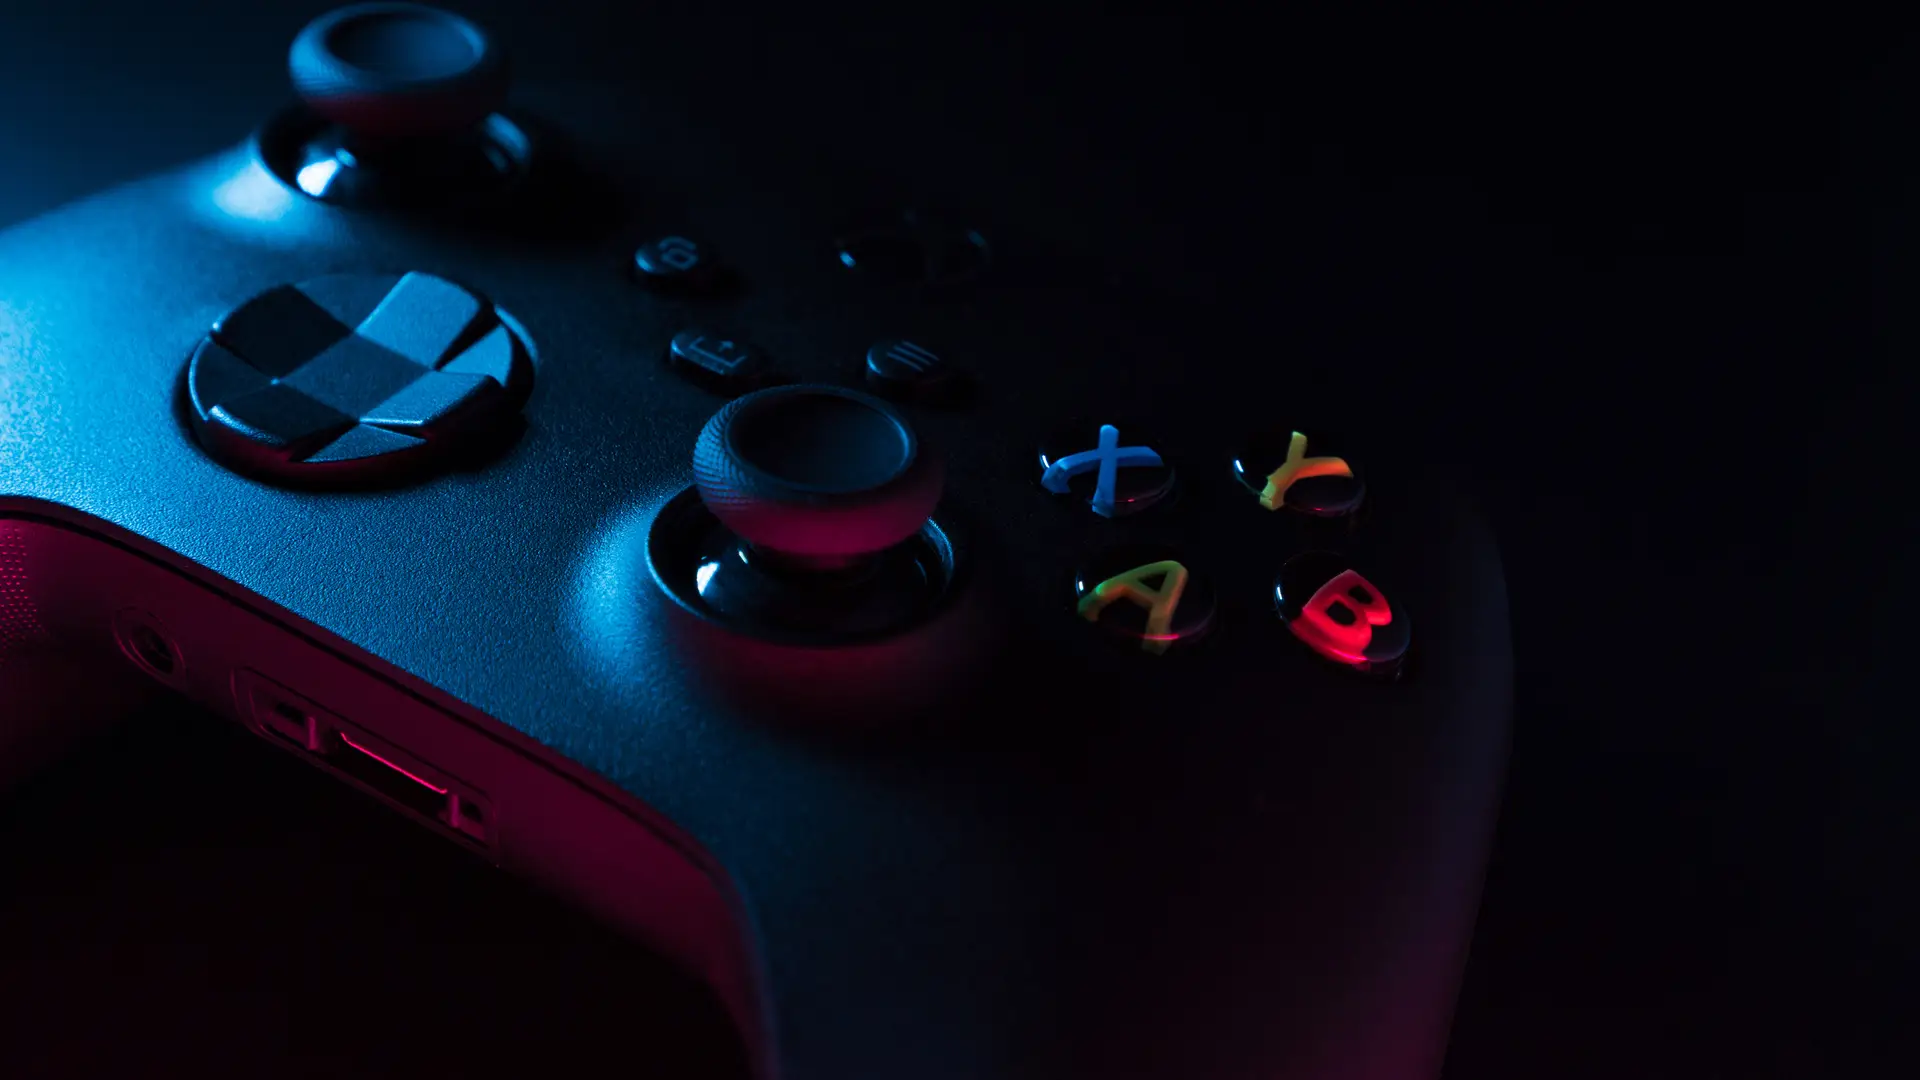 Vista en detalle de un mando de la Xbox para representar los mandos con los que poder jugar con el Game Pass